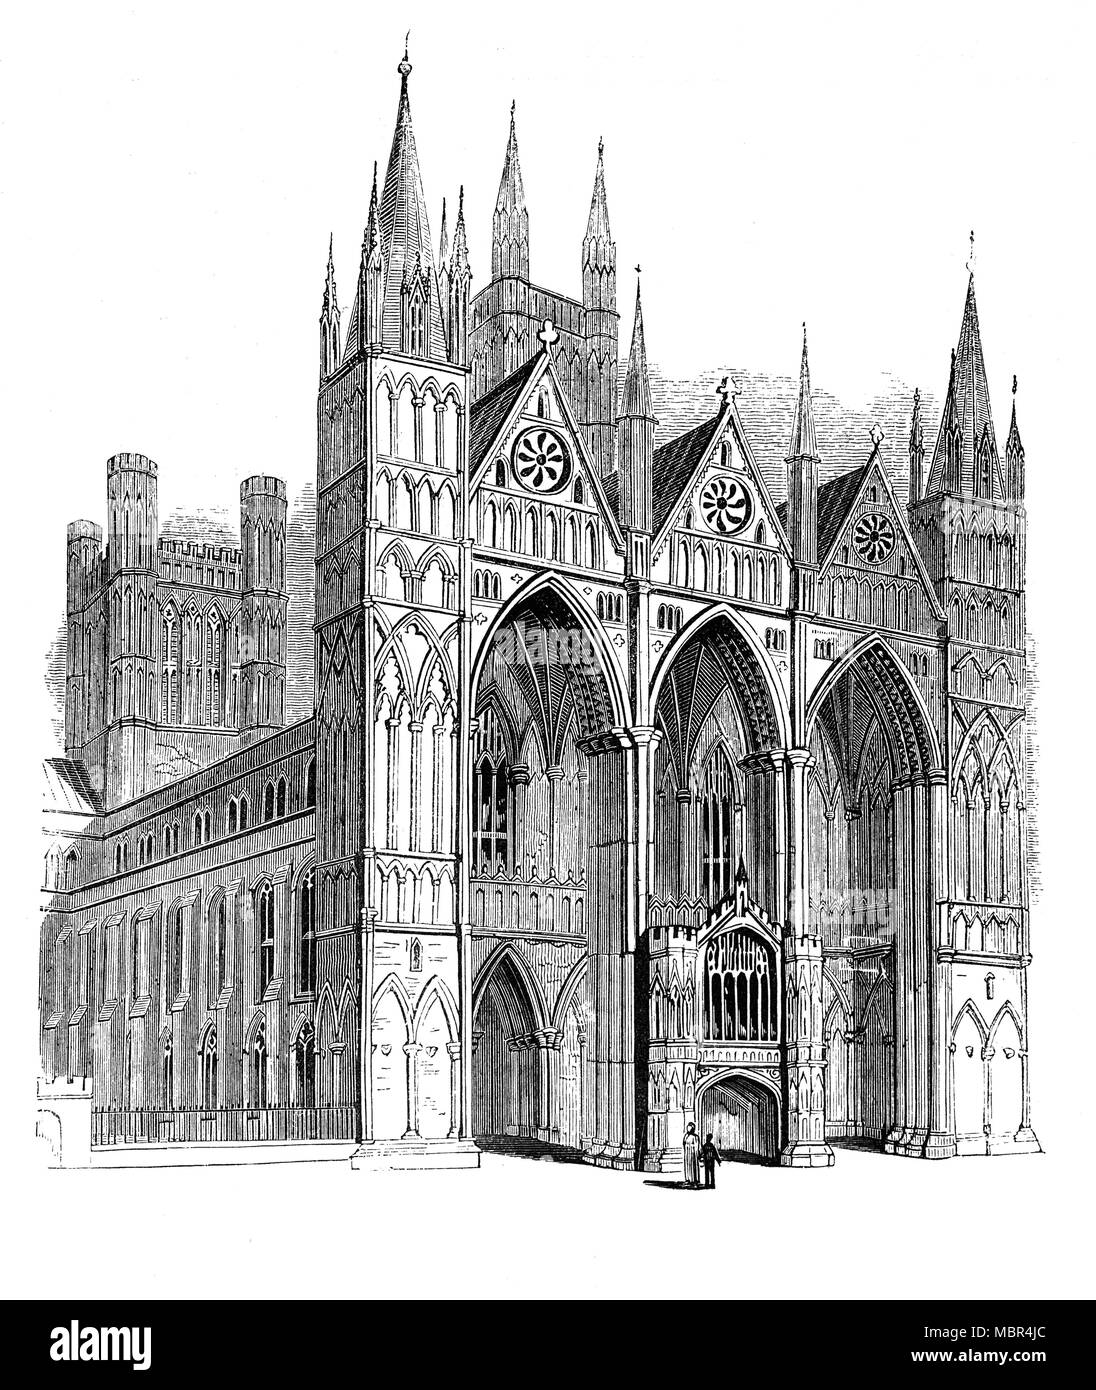 Die Kathedrale von Peterborough, Cambridgeshire, England, auch bekannt als Saint Peter's Cathedral, St. Peter, St. Paul und St. Andreas, deren Statuen aus den drei hohen Giebeln der berühmten West Front gewidmet. Obwohl es in der angelsächsischen Zeit gegründet wurde, seine Architektur ist vor allem Norman, nach einem Umbau im 12. Jahrhundert. Die Kathedrale ist für seine imposante frühen englischen Gotischen West Front (Fassade), der mit seinen drei großen Bögen, ohne architektonische Präzedenzfall und ohne direktes Nachfolgemodell ist bekannt. Stockfoto